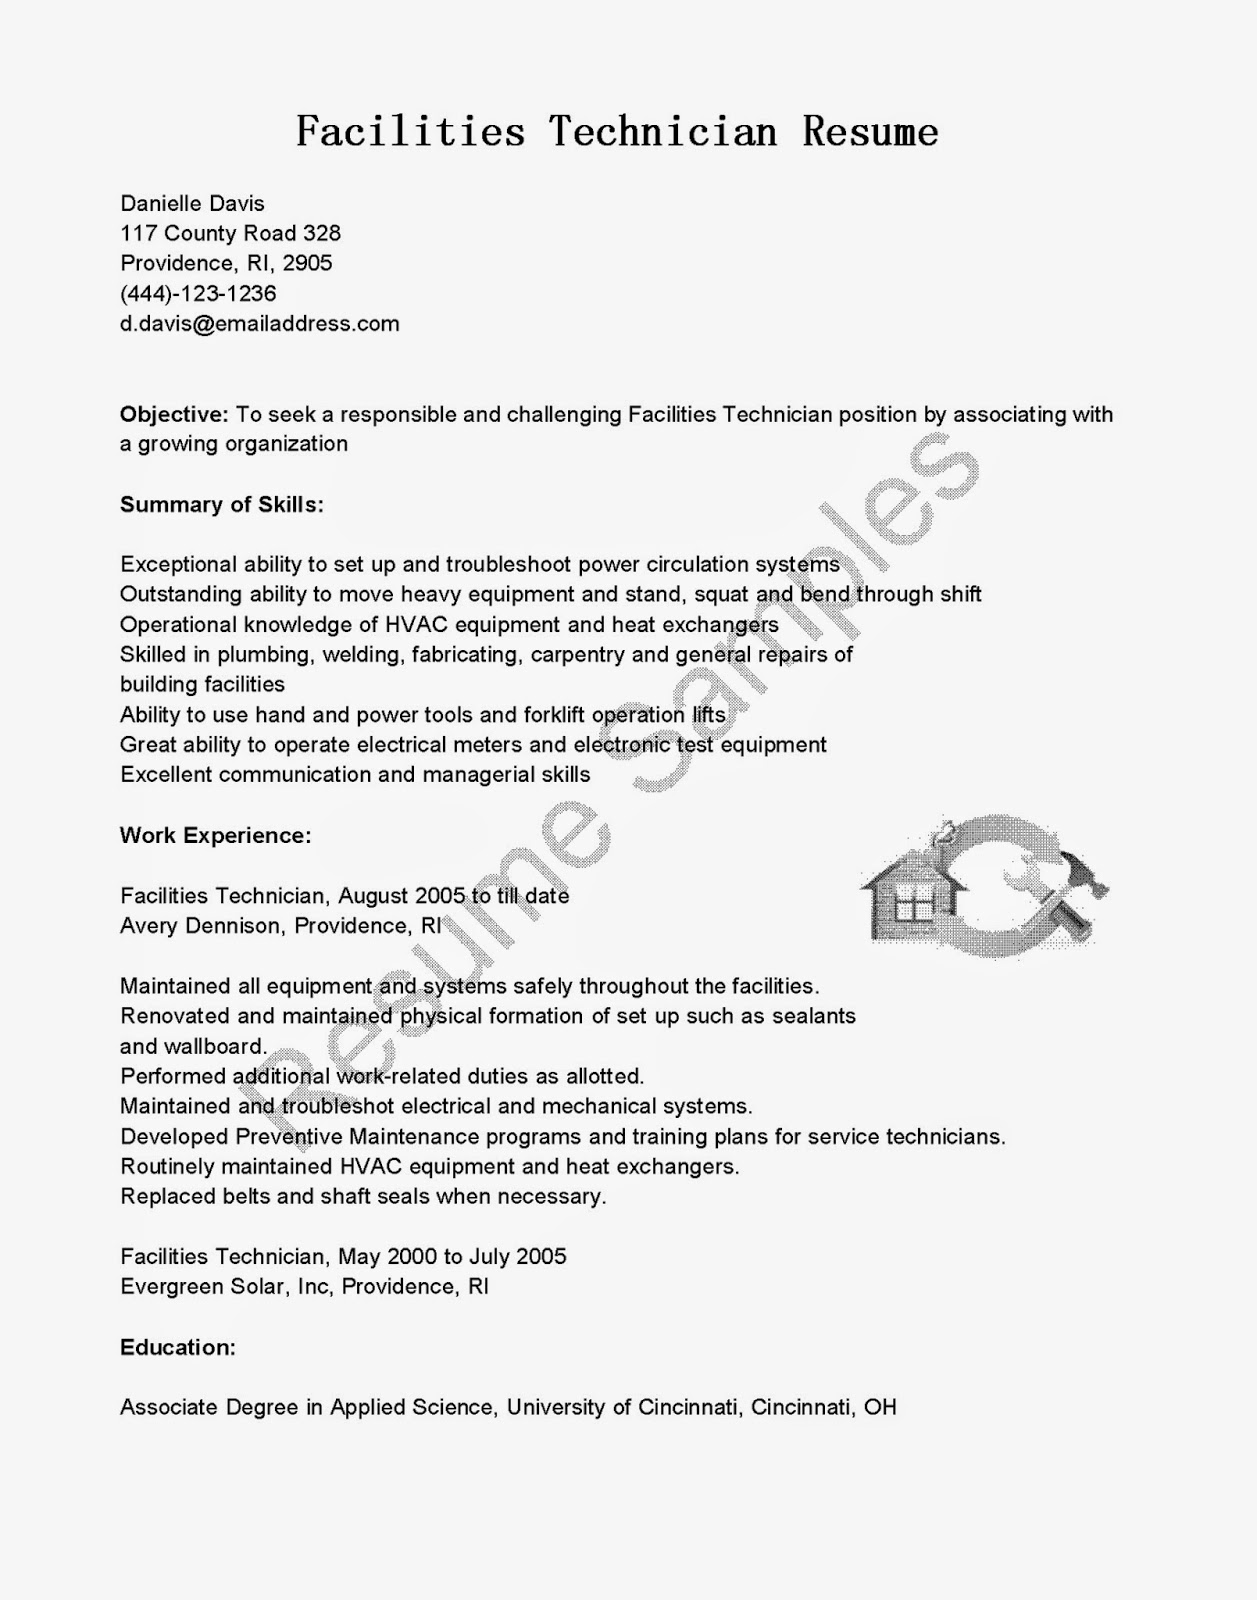 Columbus ohio professional resume services